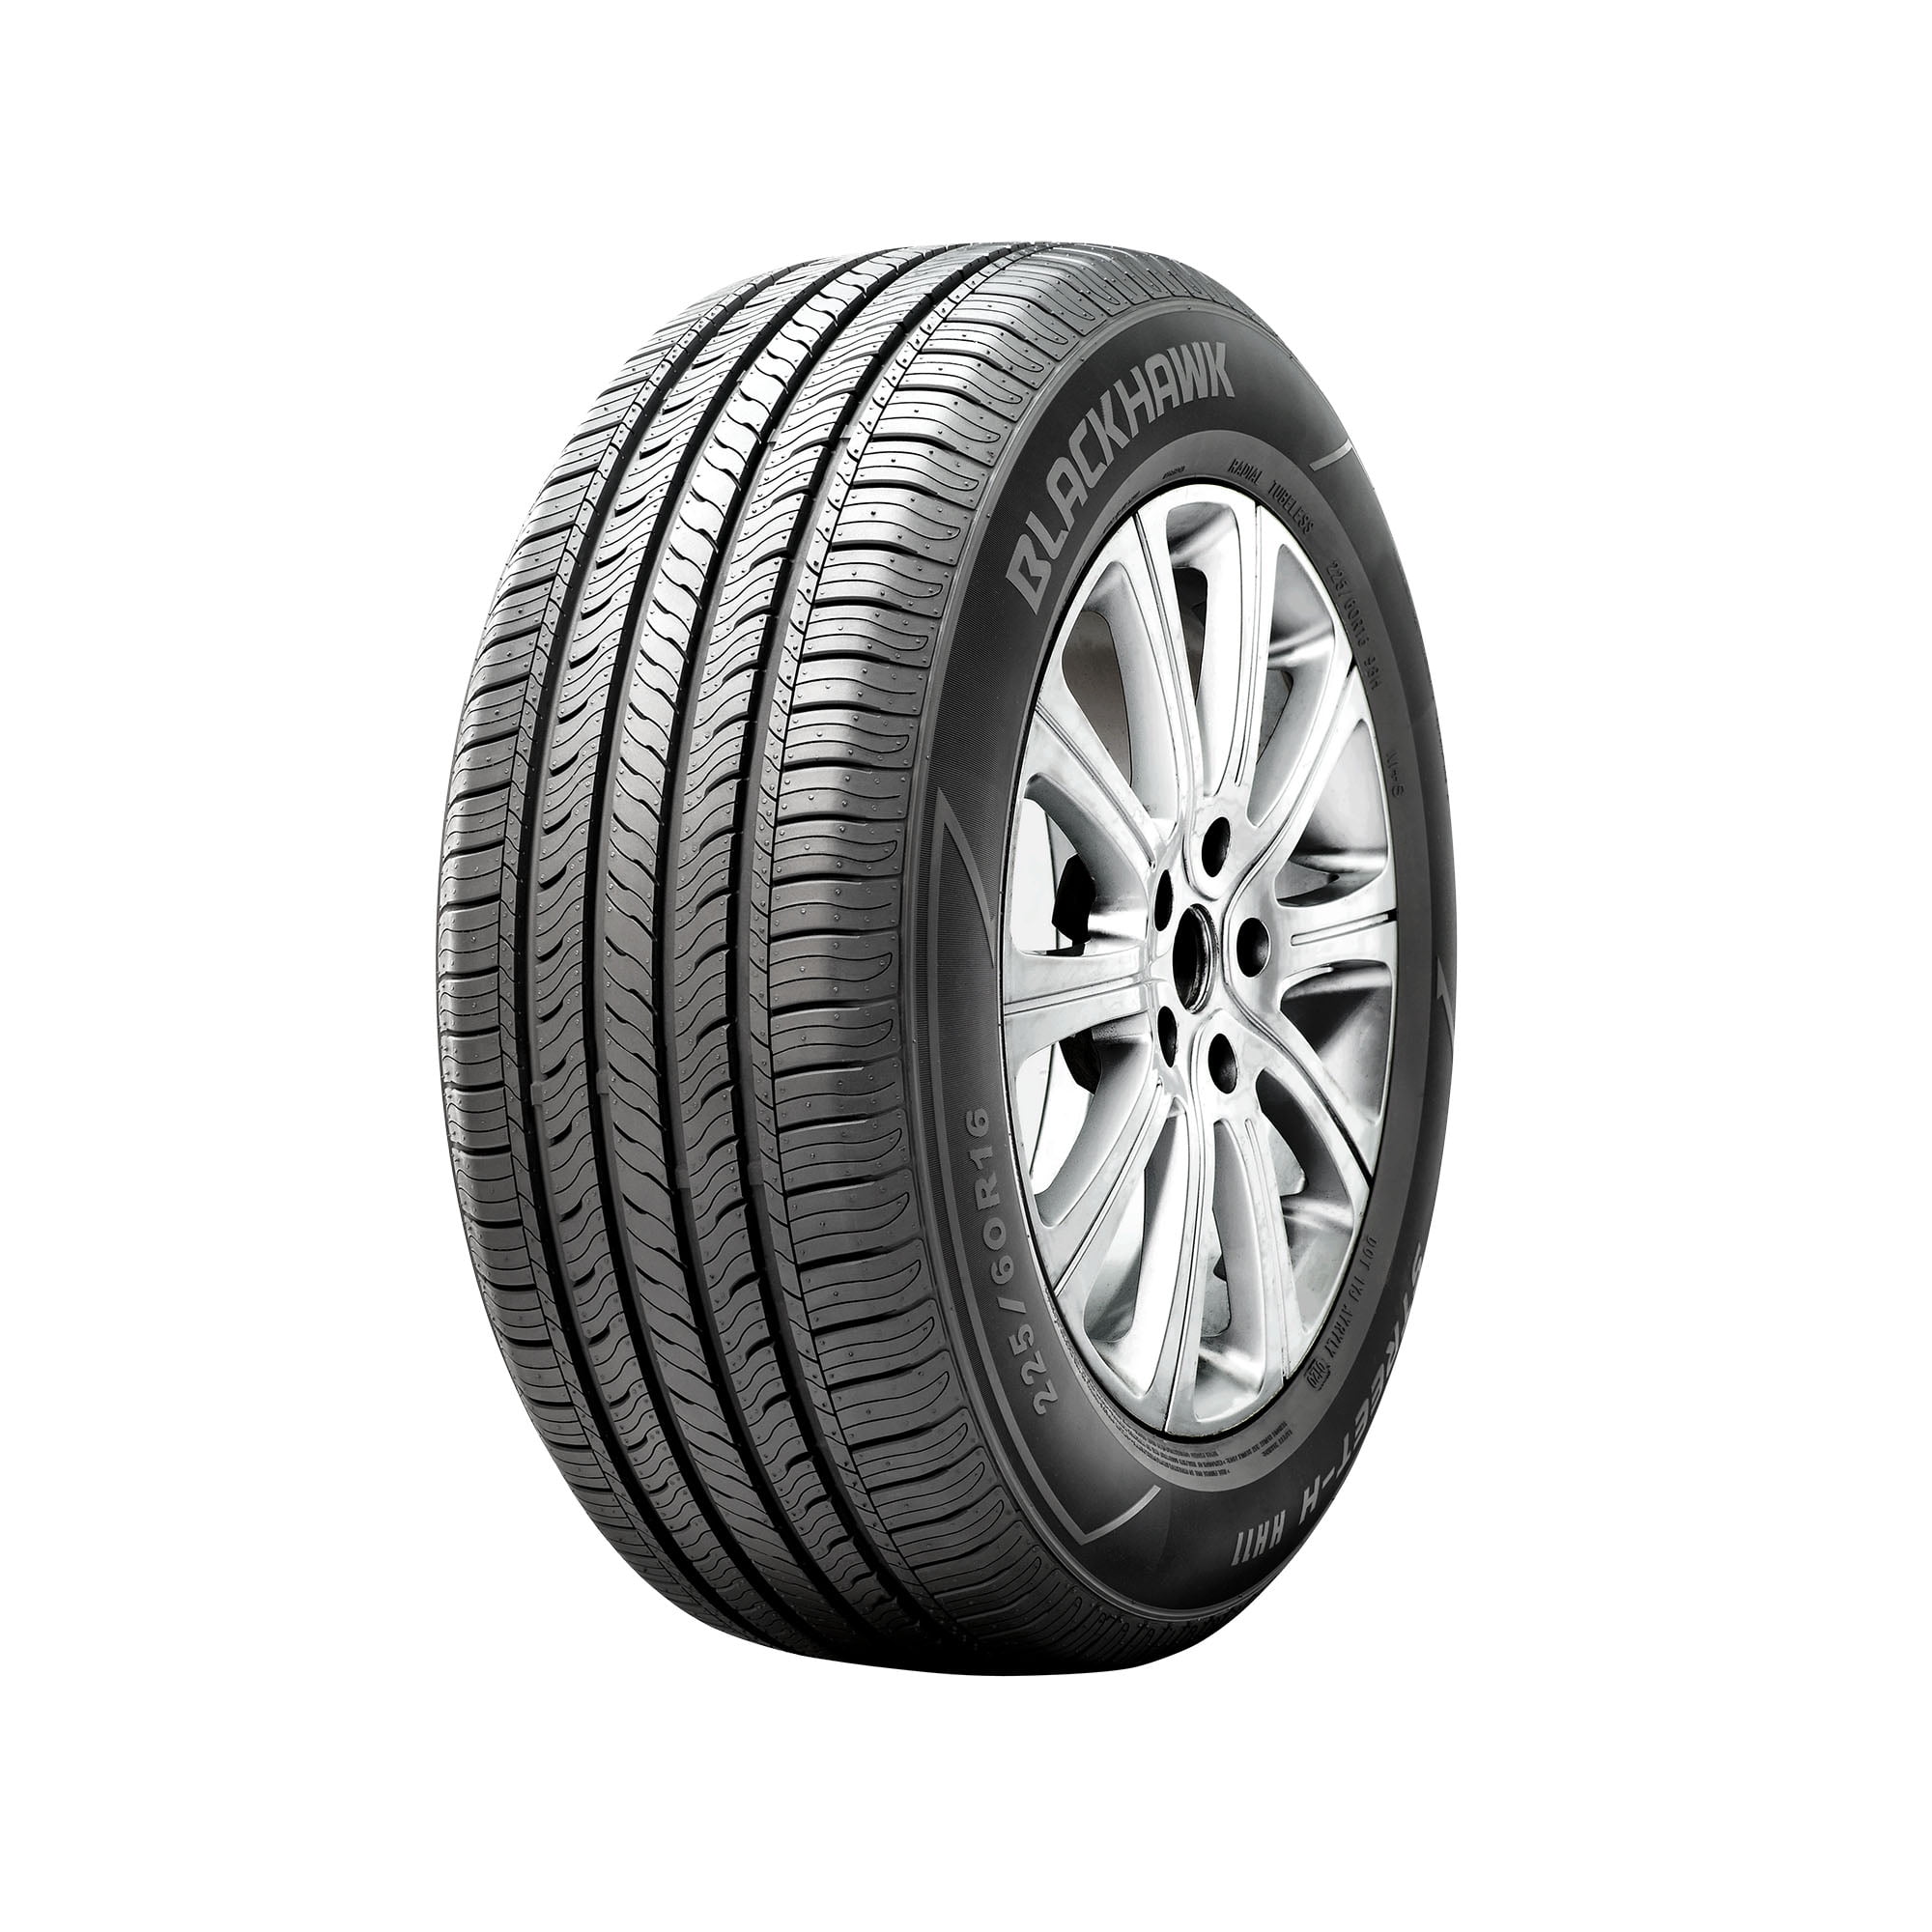 Nexen CP672 195/60R15 Tire 88 H